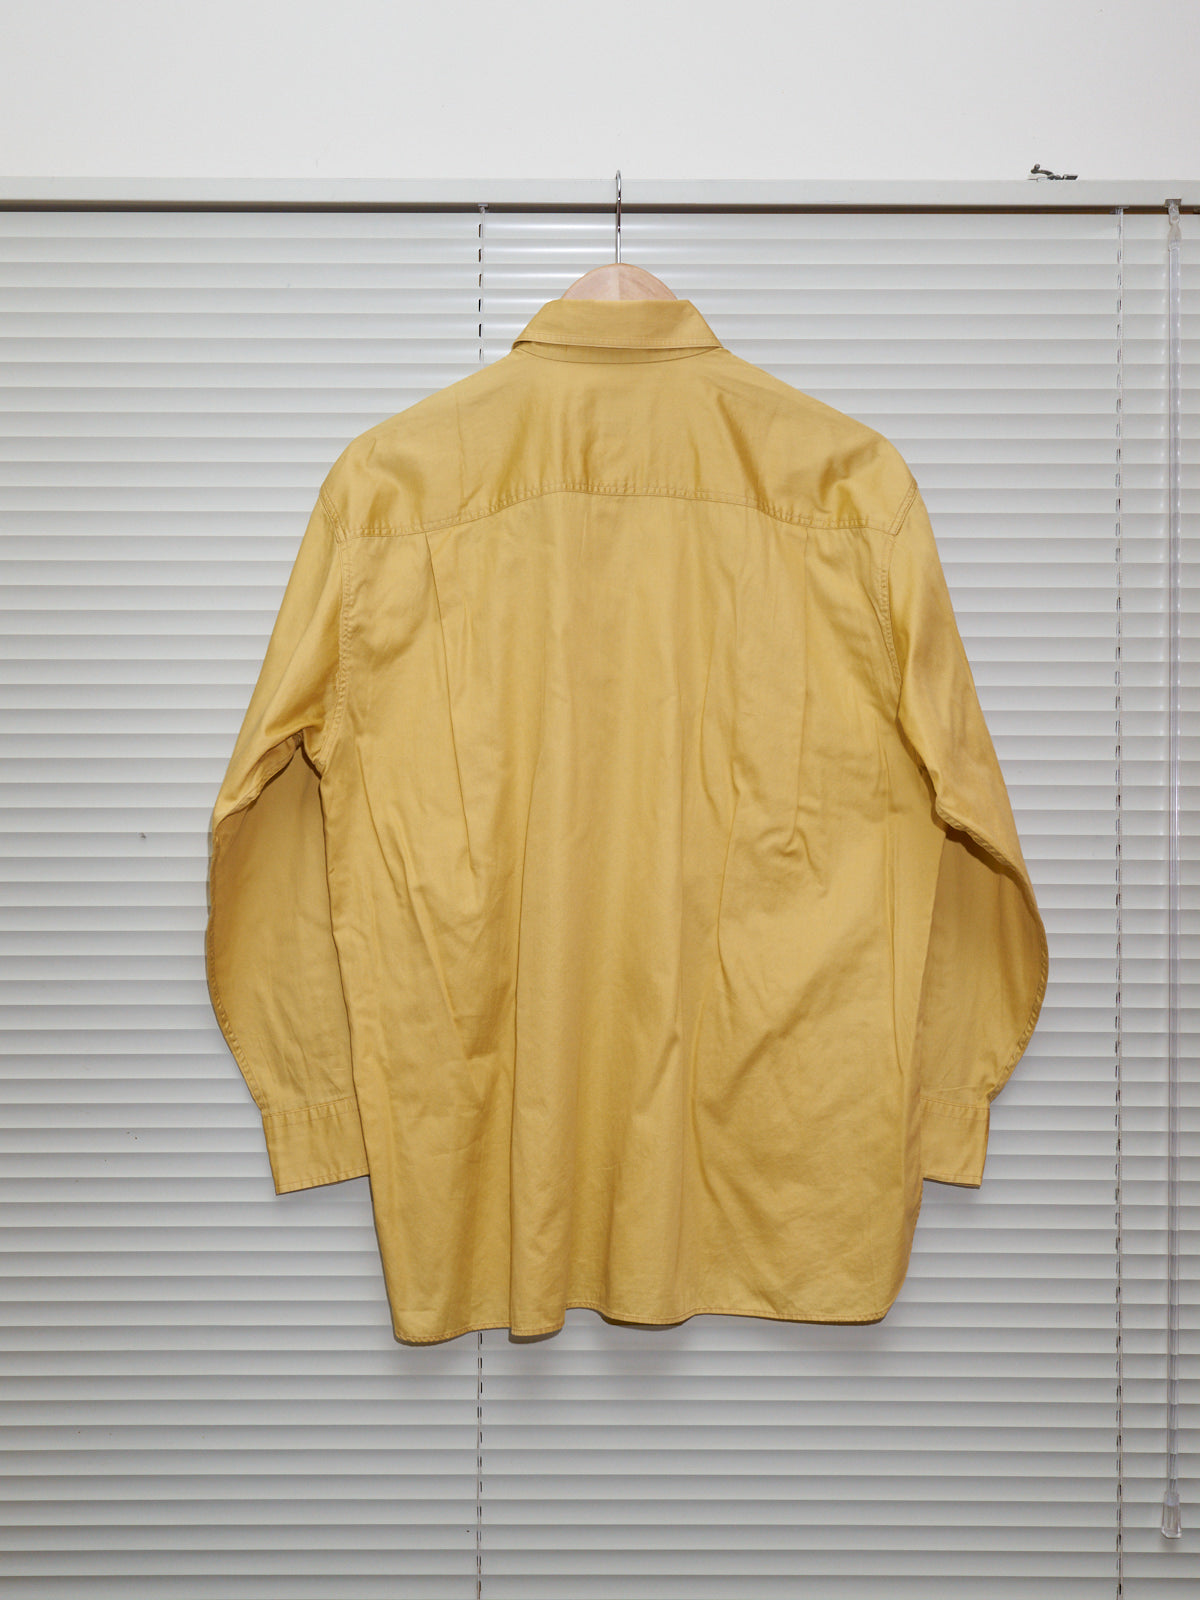 CC Kansai Yamamoto 1990s yellow cotton logo reflector patch shirt - mens M S